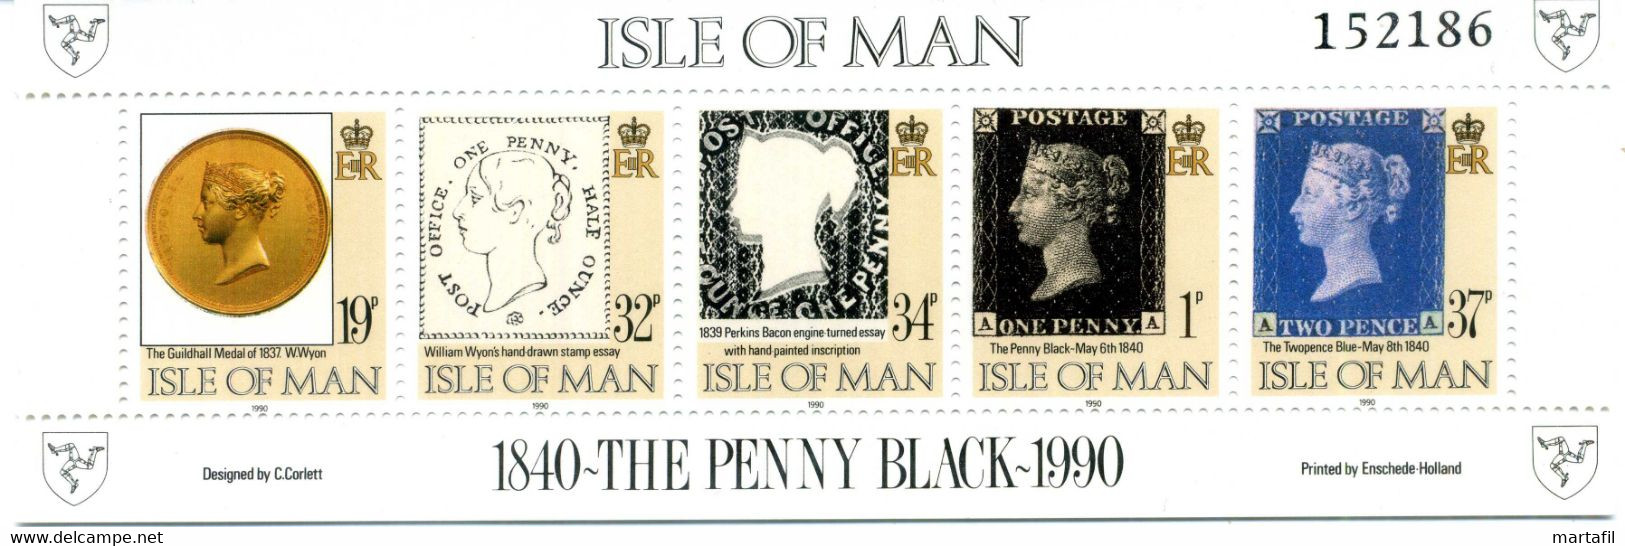 1990 MAN BF 13 MNH ** - Isle Of Man